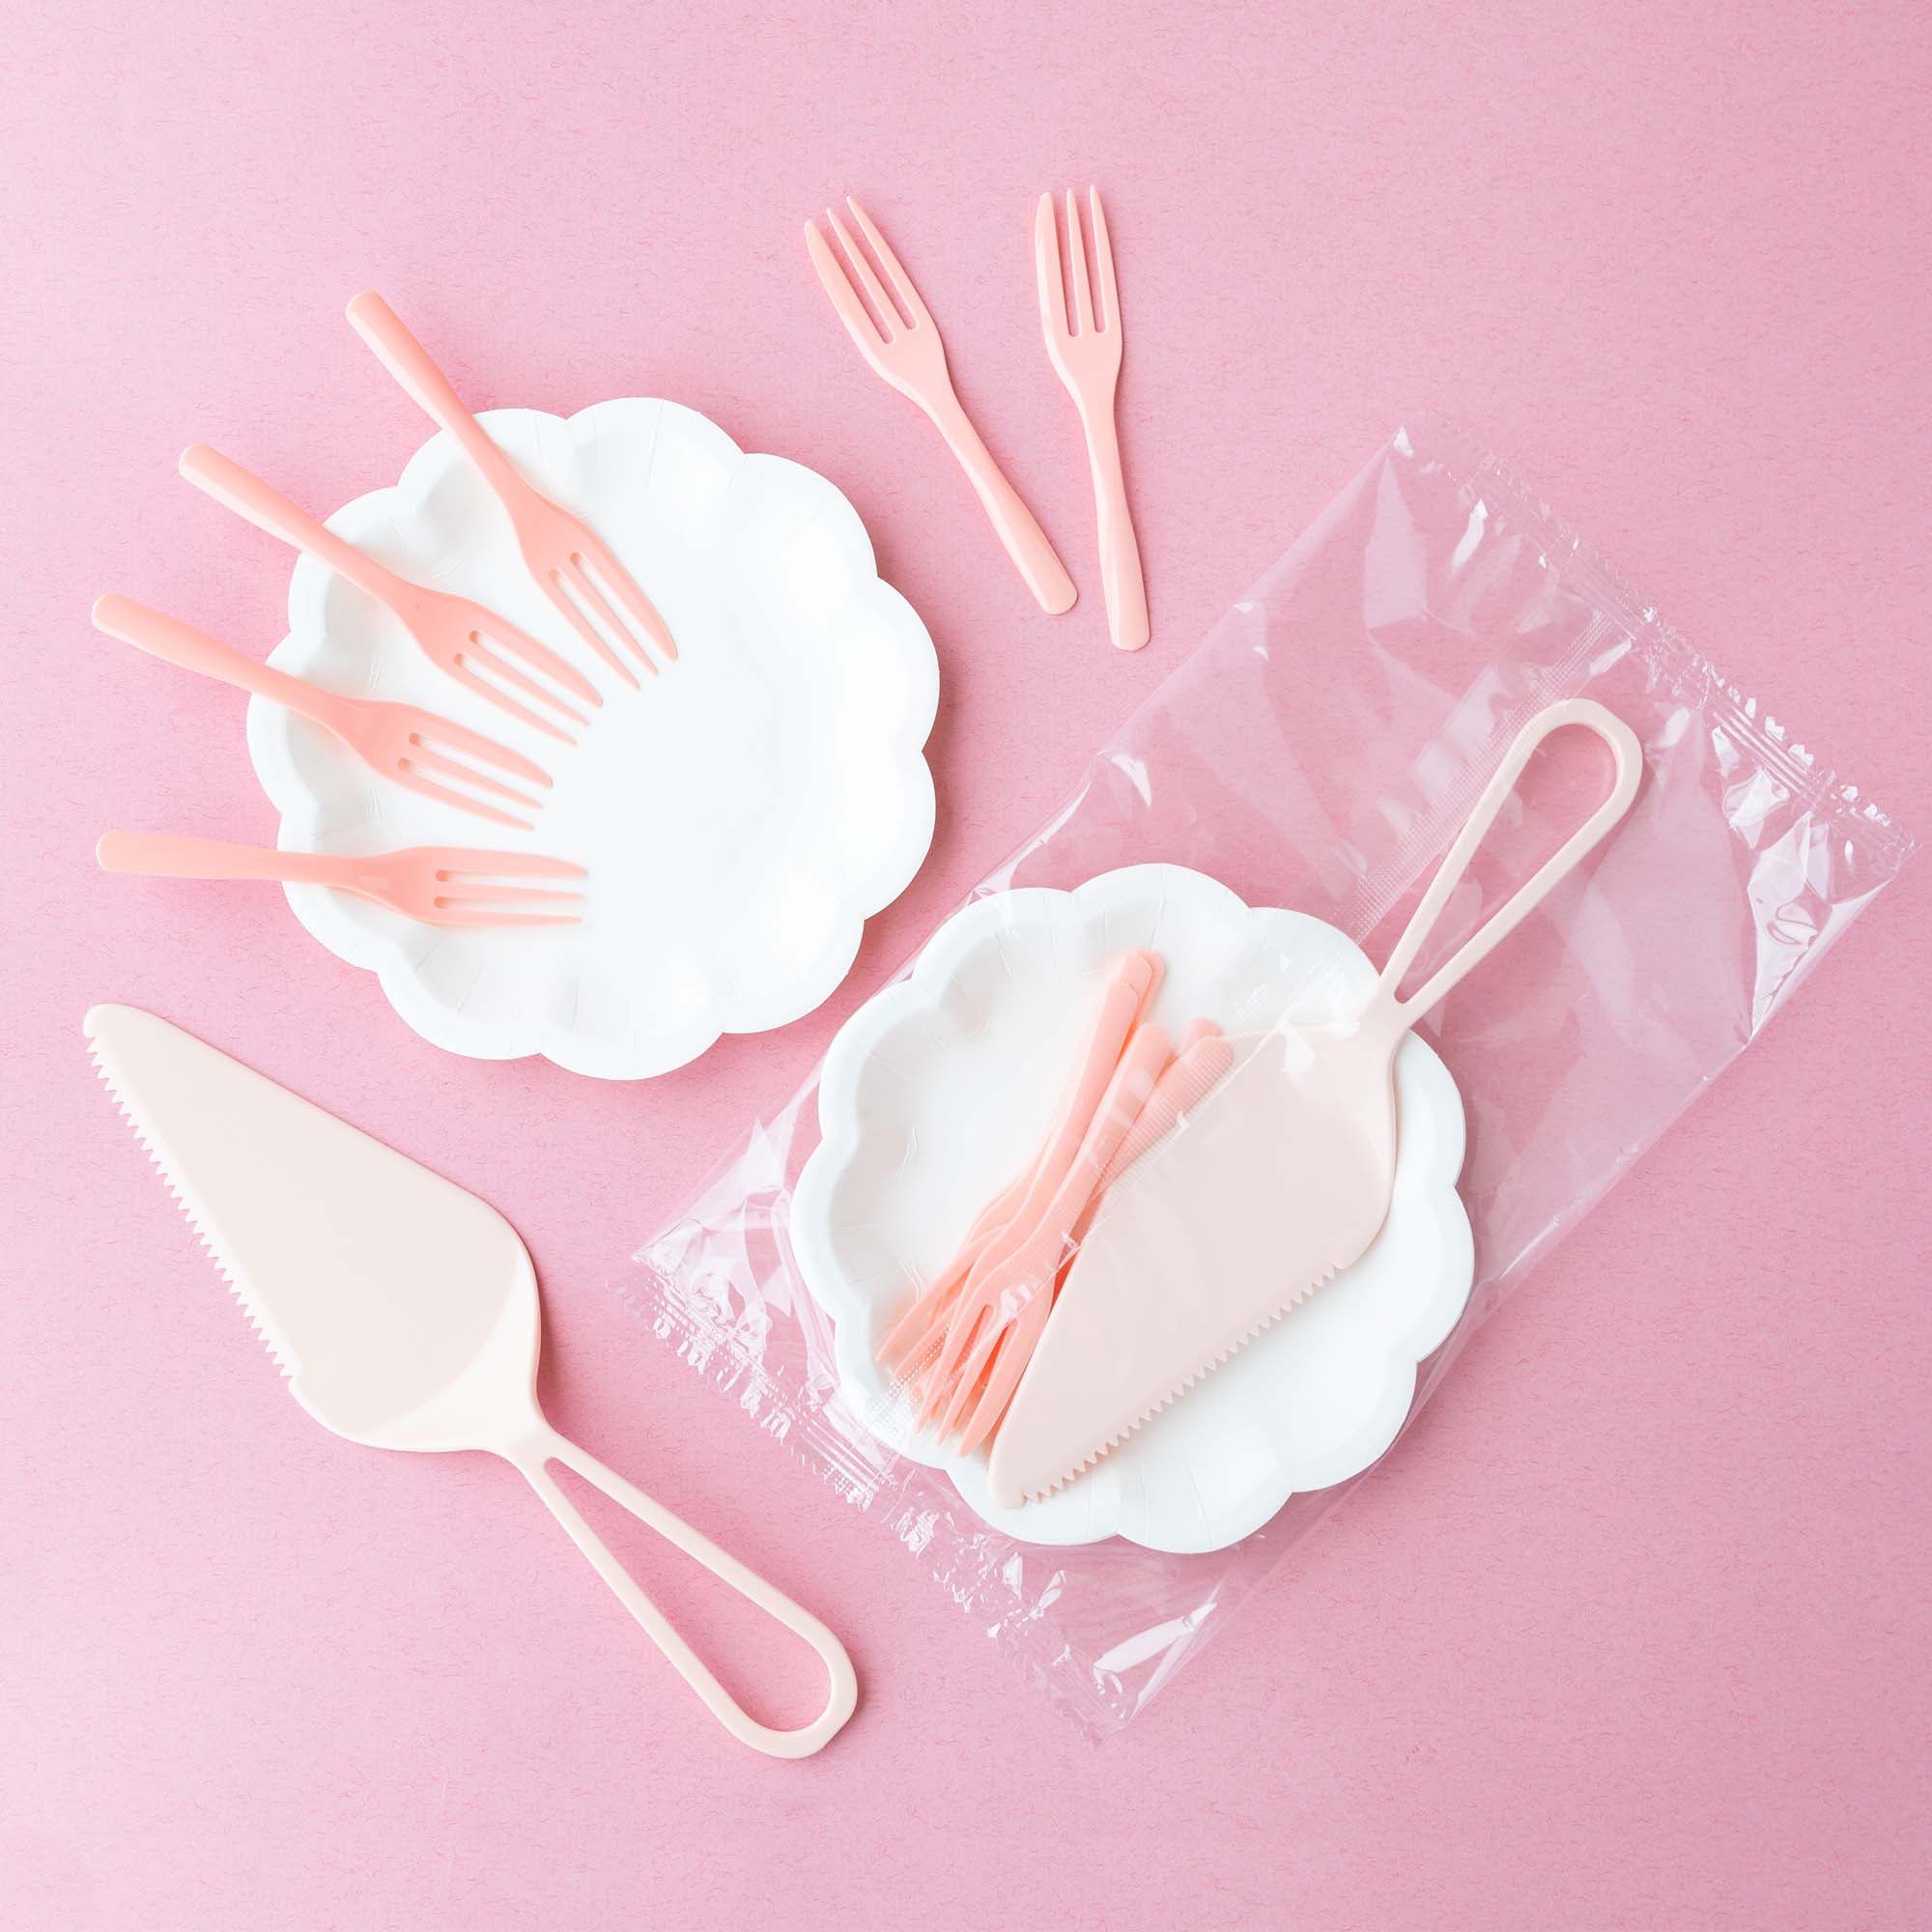 белые бумажные тарелки для торта с цветами с тортом и тортовыми вилками и ножами